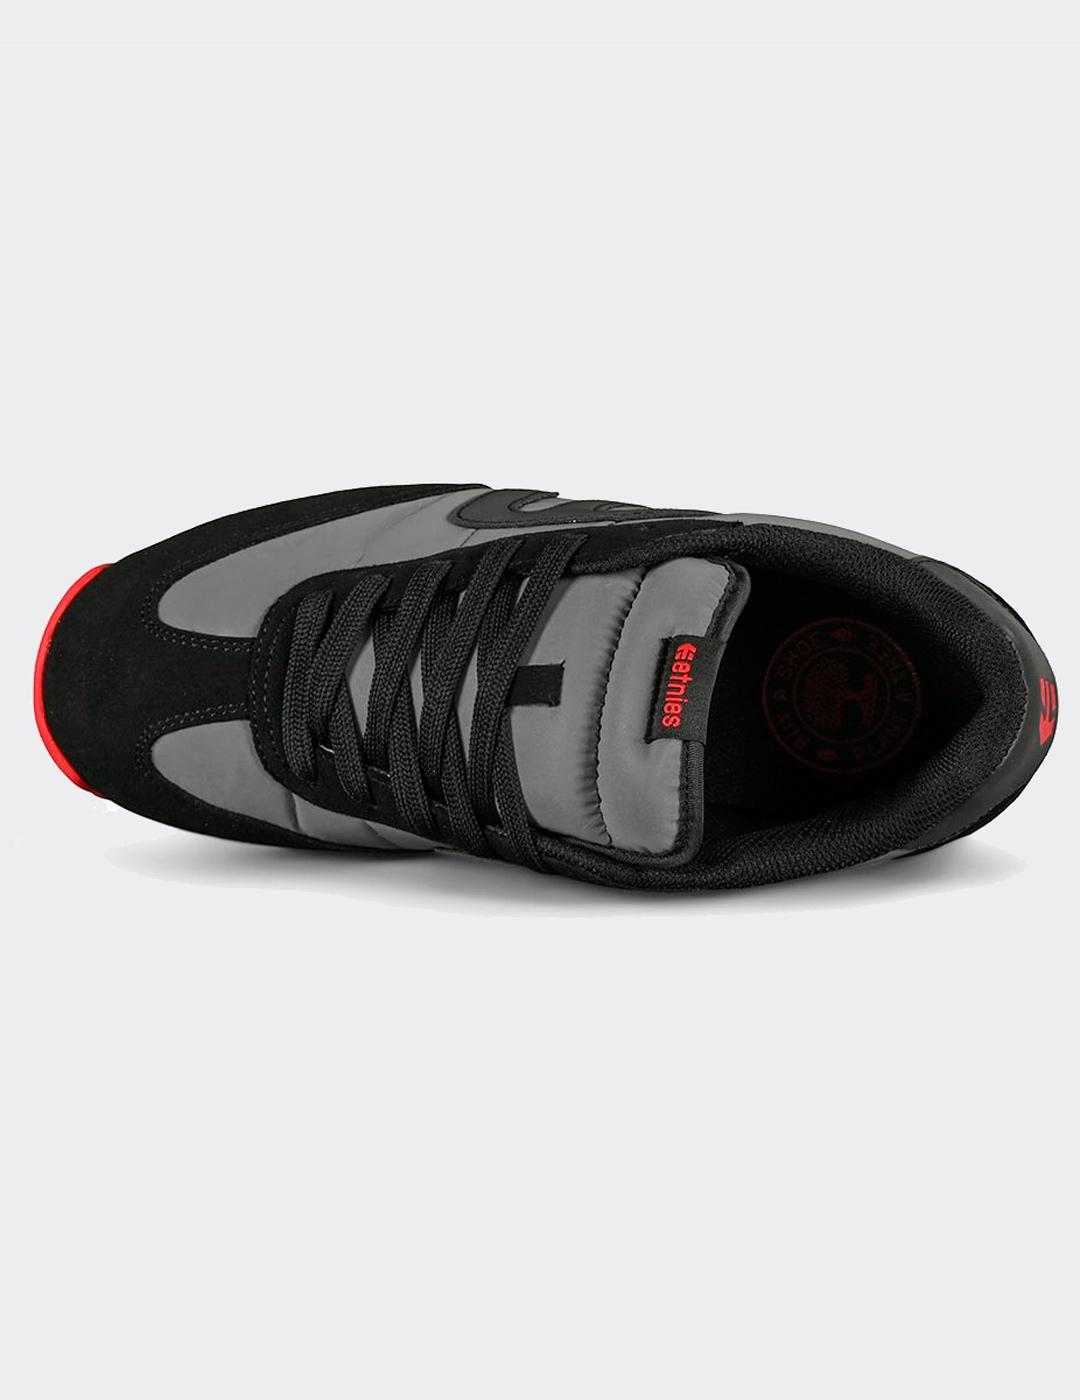 Zapatillas ETNIES LO-CUT CB - Black/Black/Reflective